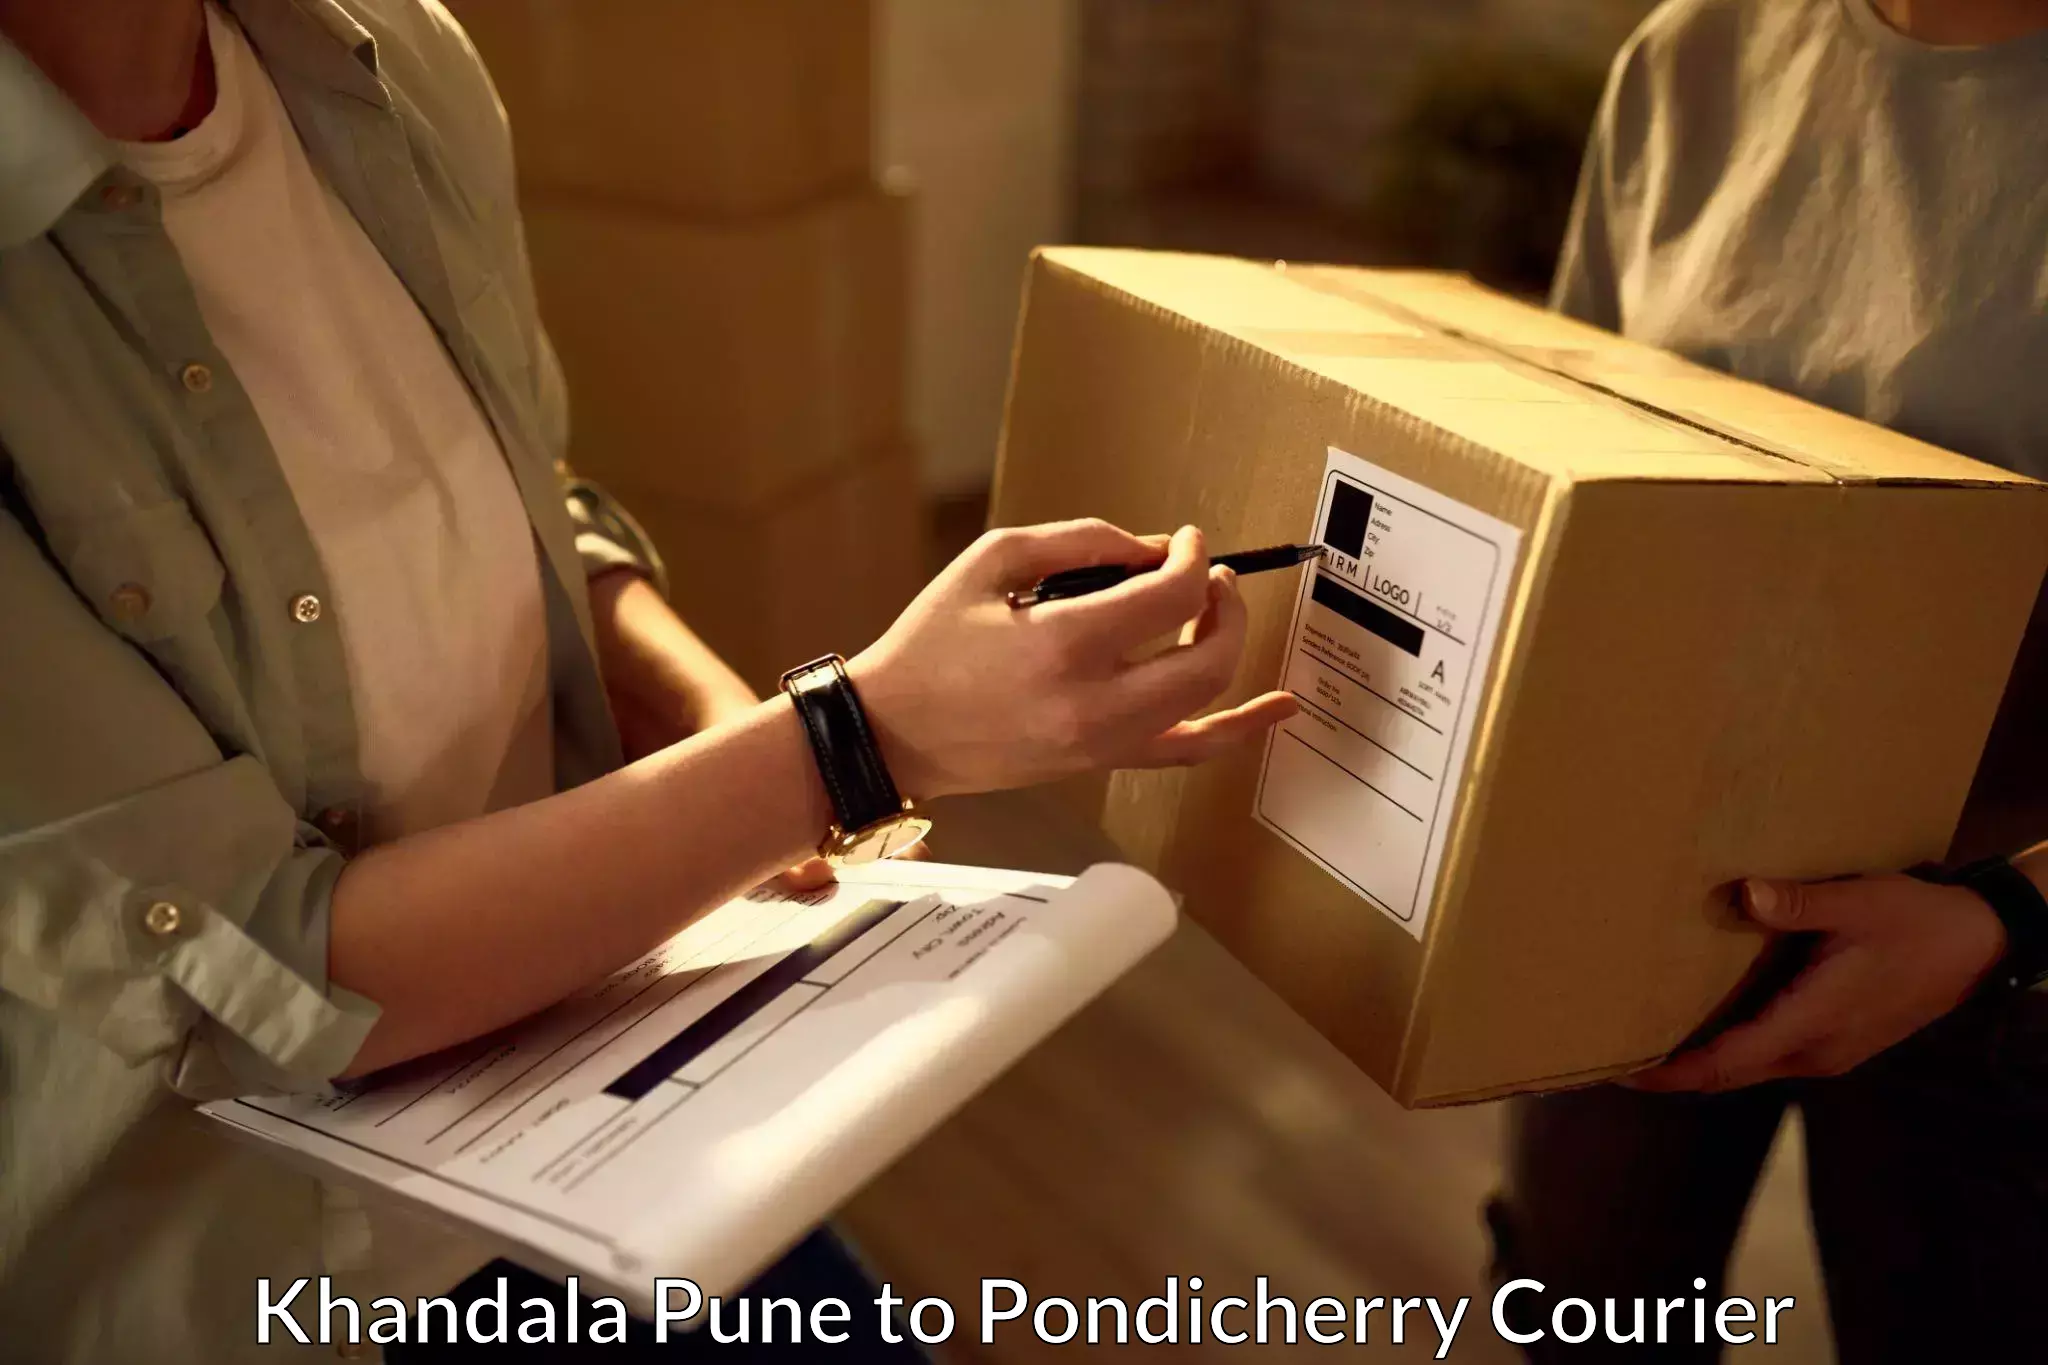 Multi-city courier Khandala Pune to Metttupalayam